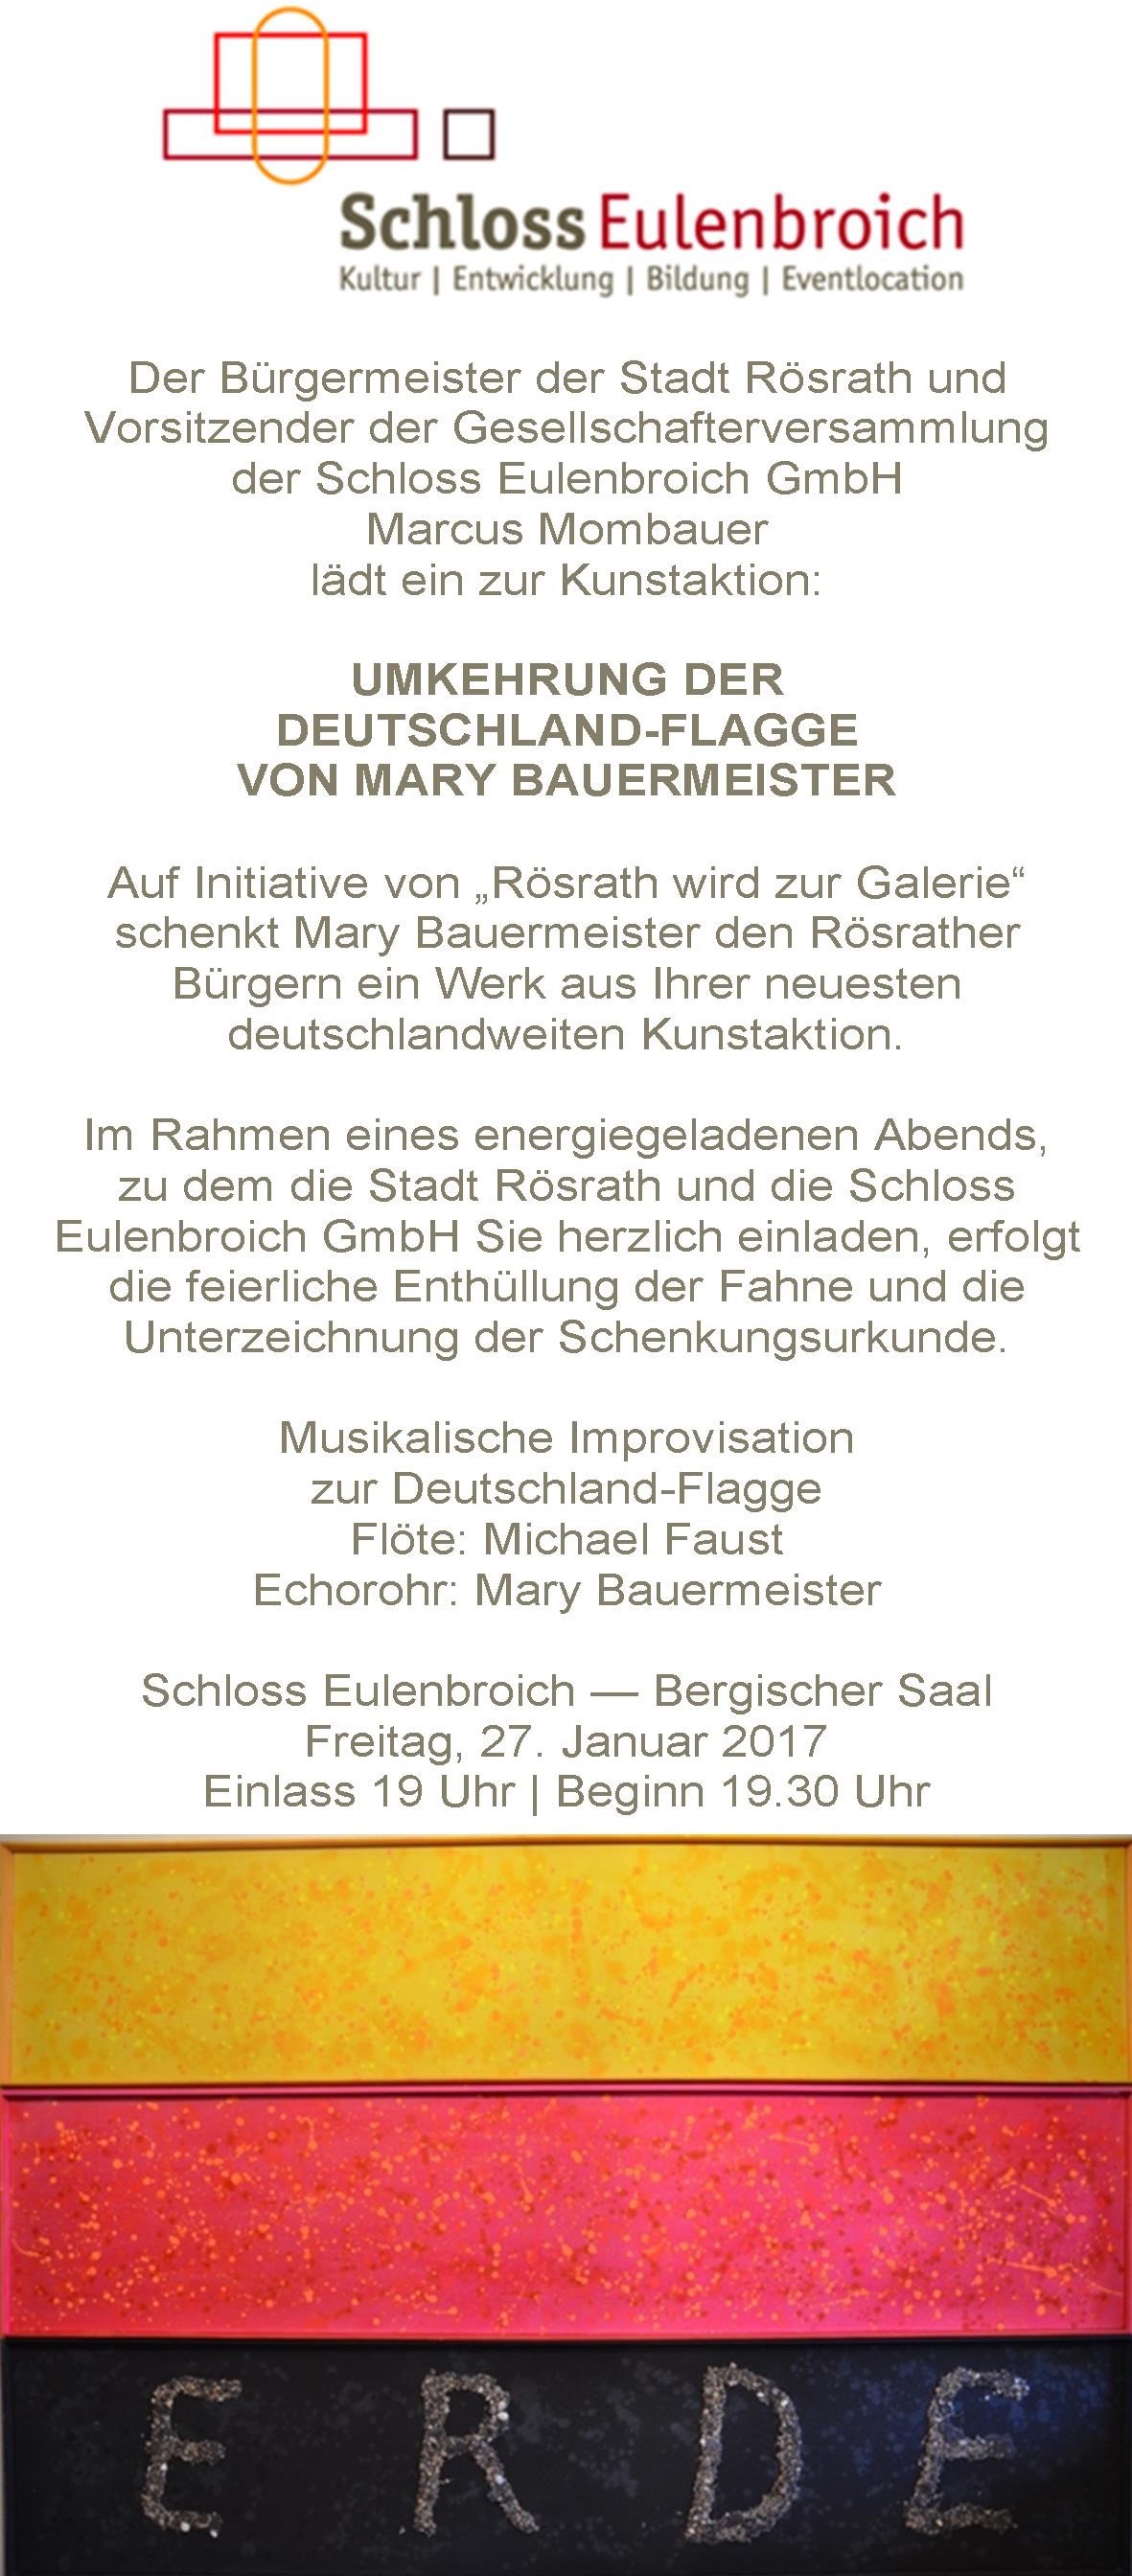 Einladung zur Kunstaktion von Mary Bauermeister am 27